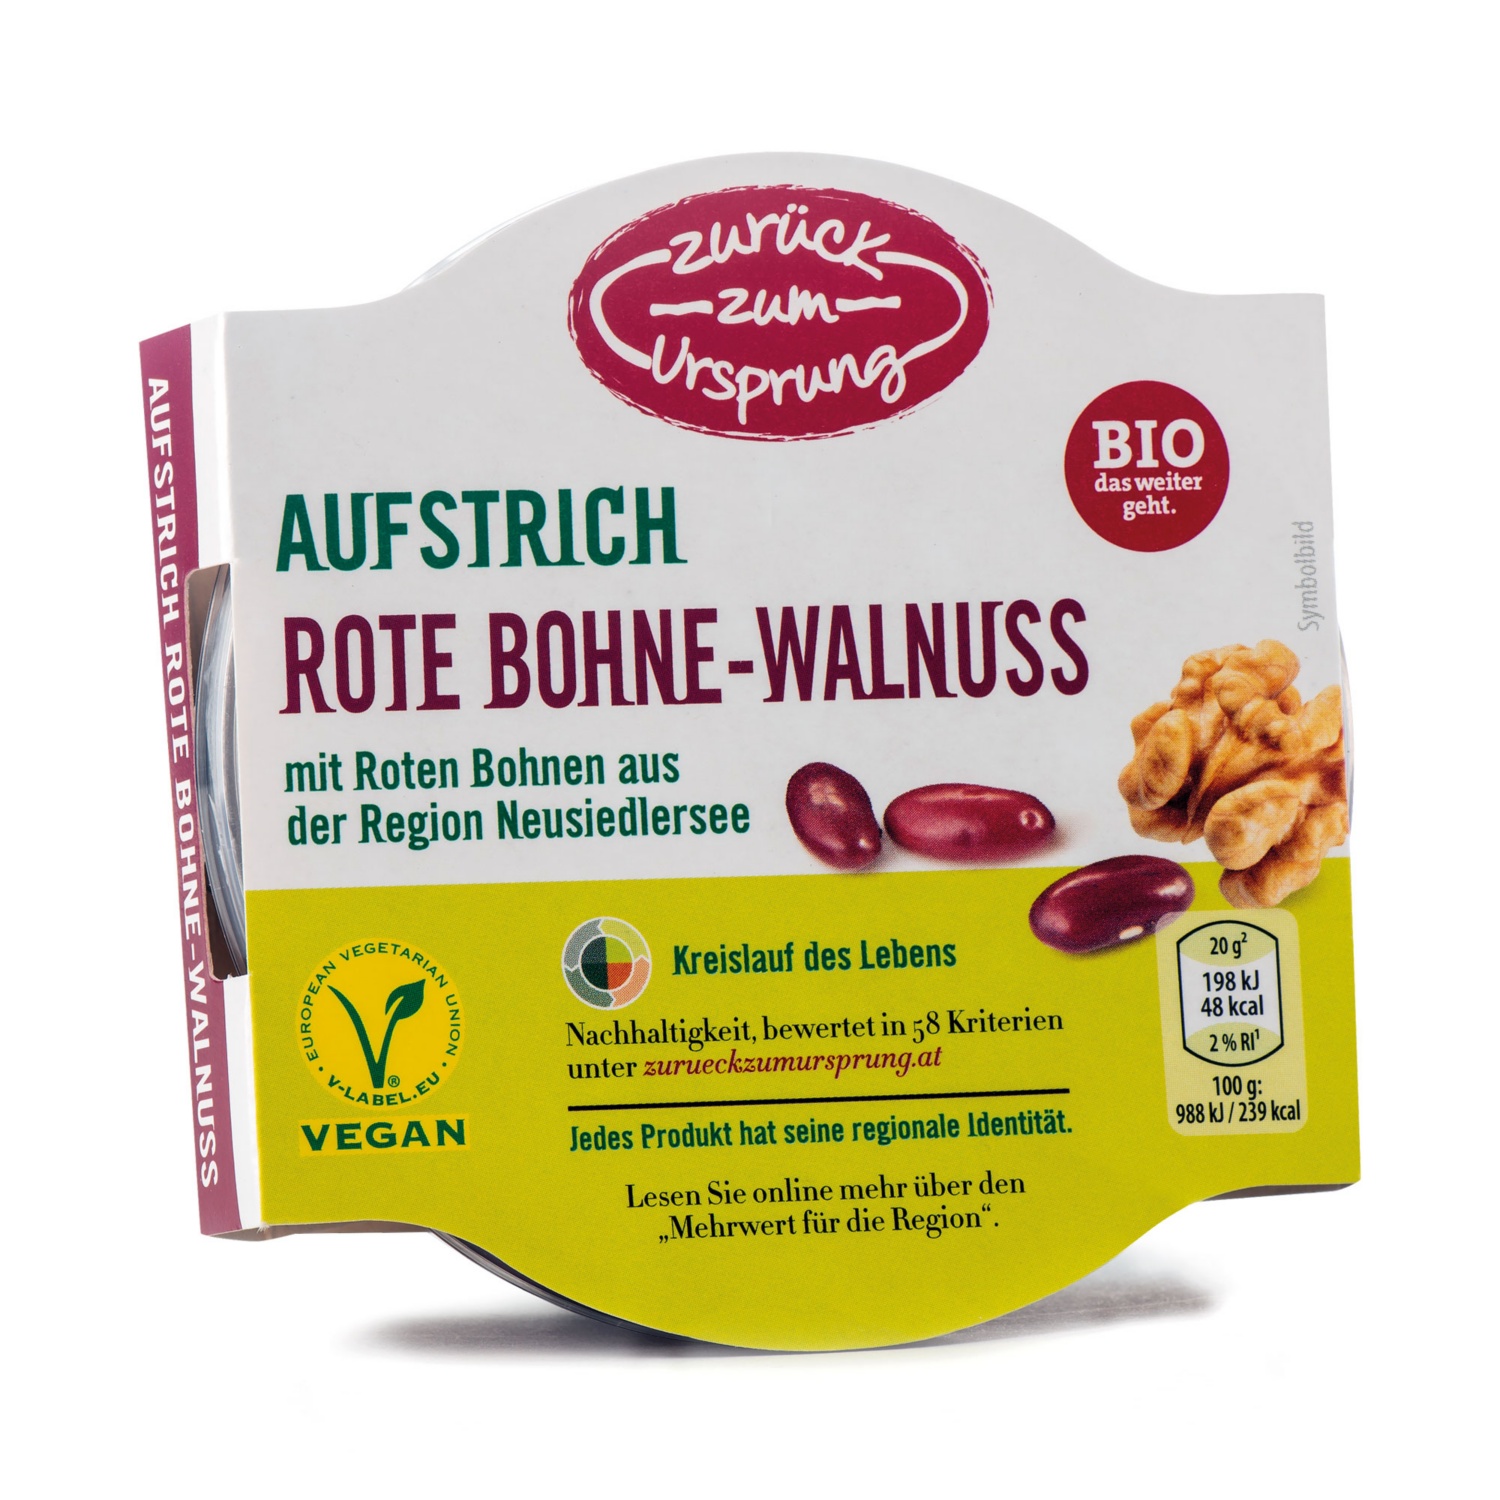 ZURÜCK ZUM URSPRUNG BIO Veganer Aufstrich, Rote Bohne-Walnuss